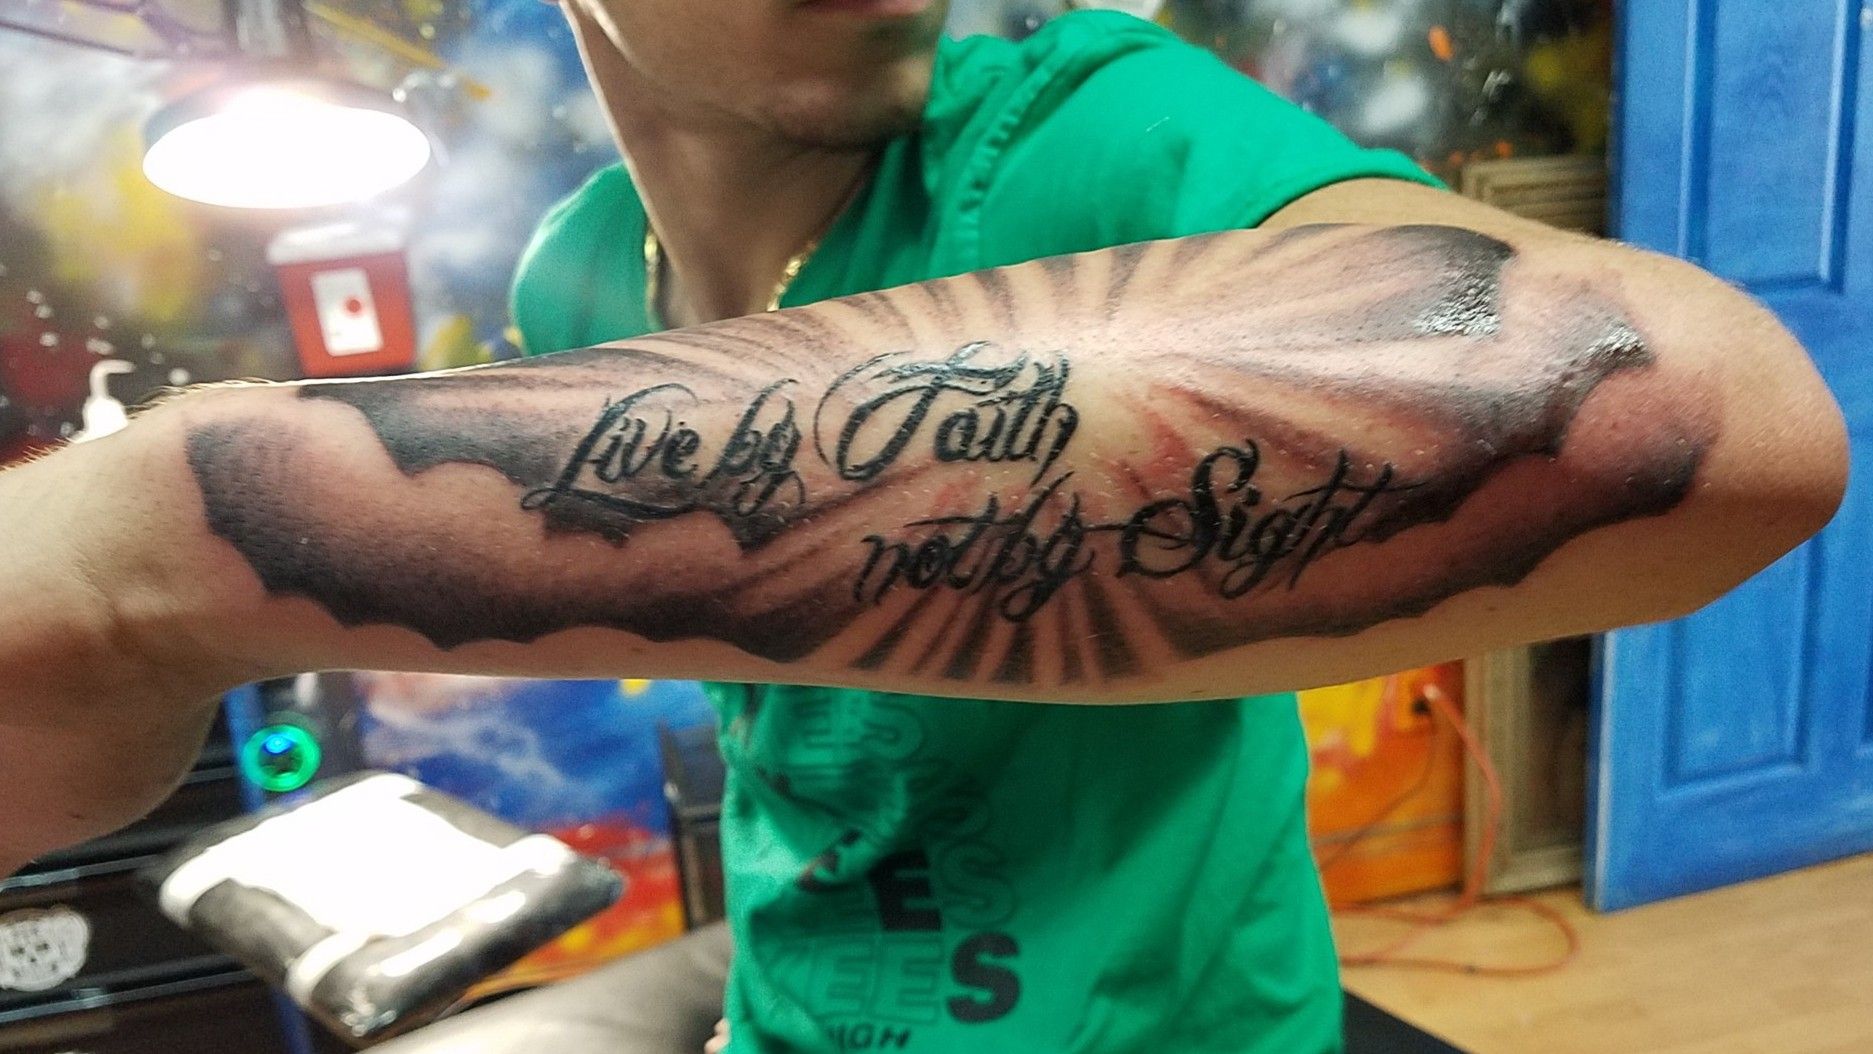 Walk by faith tattoo  Idéias de tatuagem femininas Frases para tatuagem  Tatuagem inspiradora